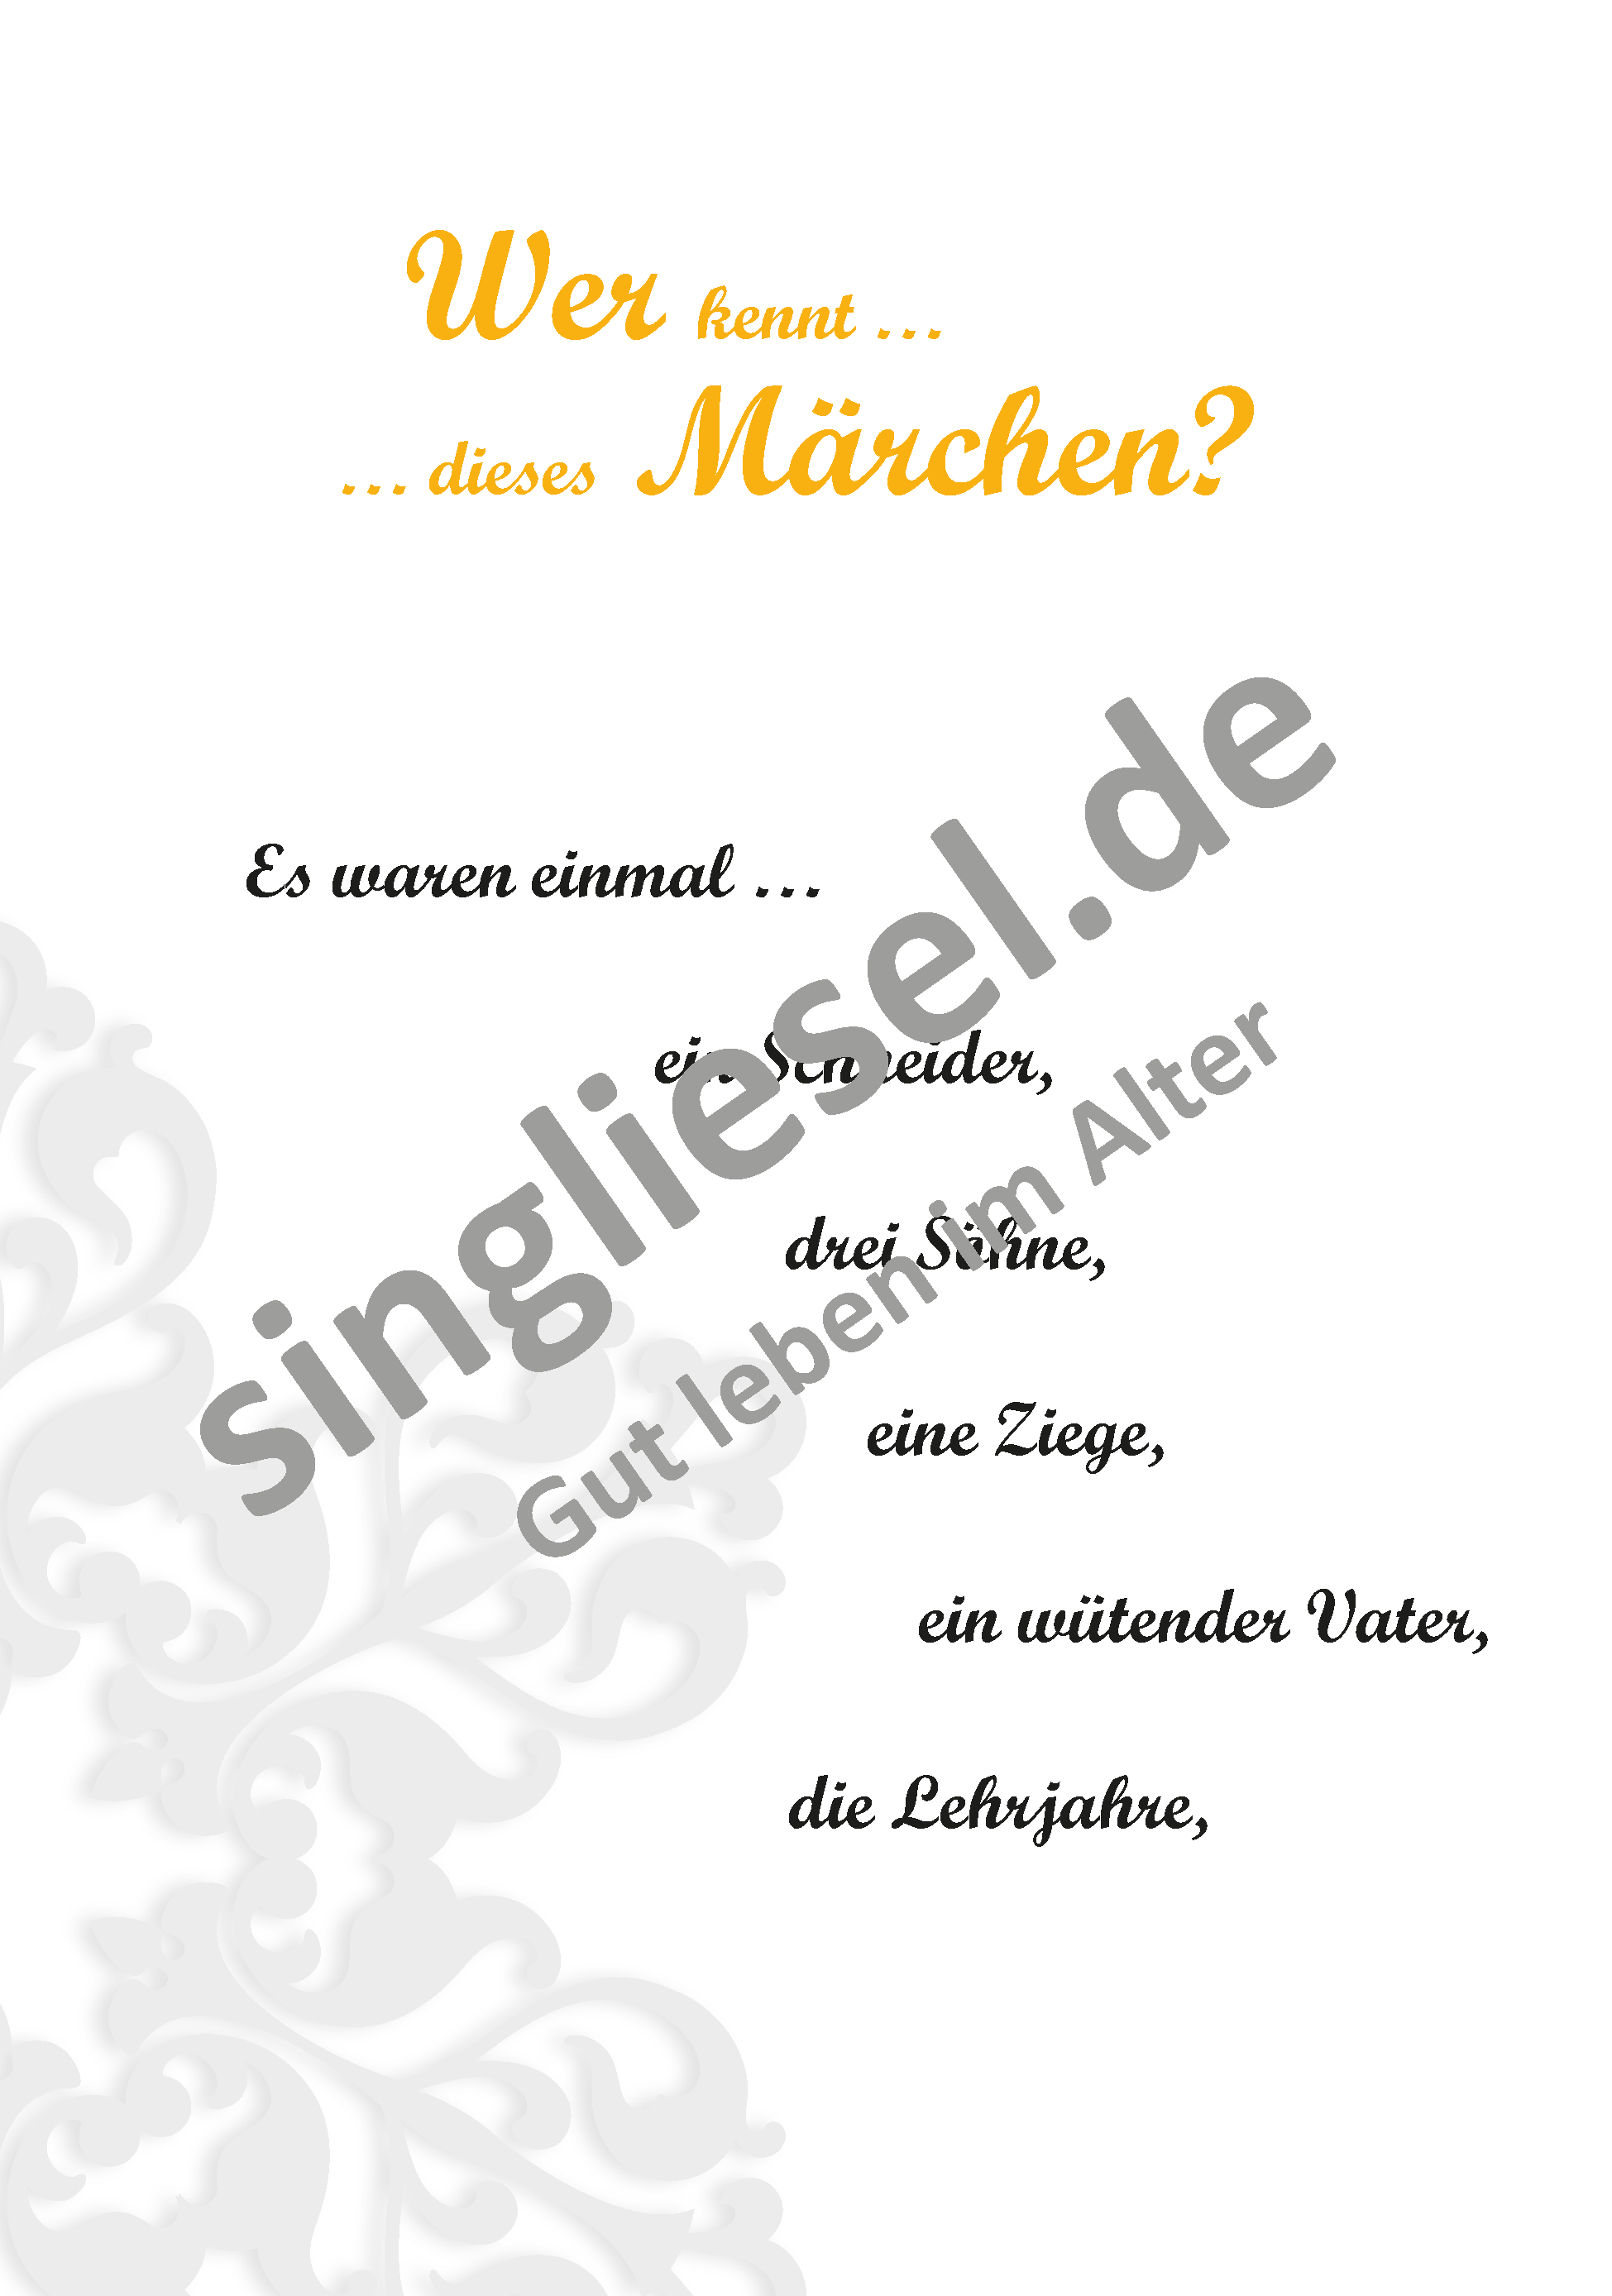 Märchen für Senioren. "Tischlein deck dich“ u.v.m. (PDF) Märchen-Quiz Seite 1